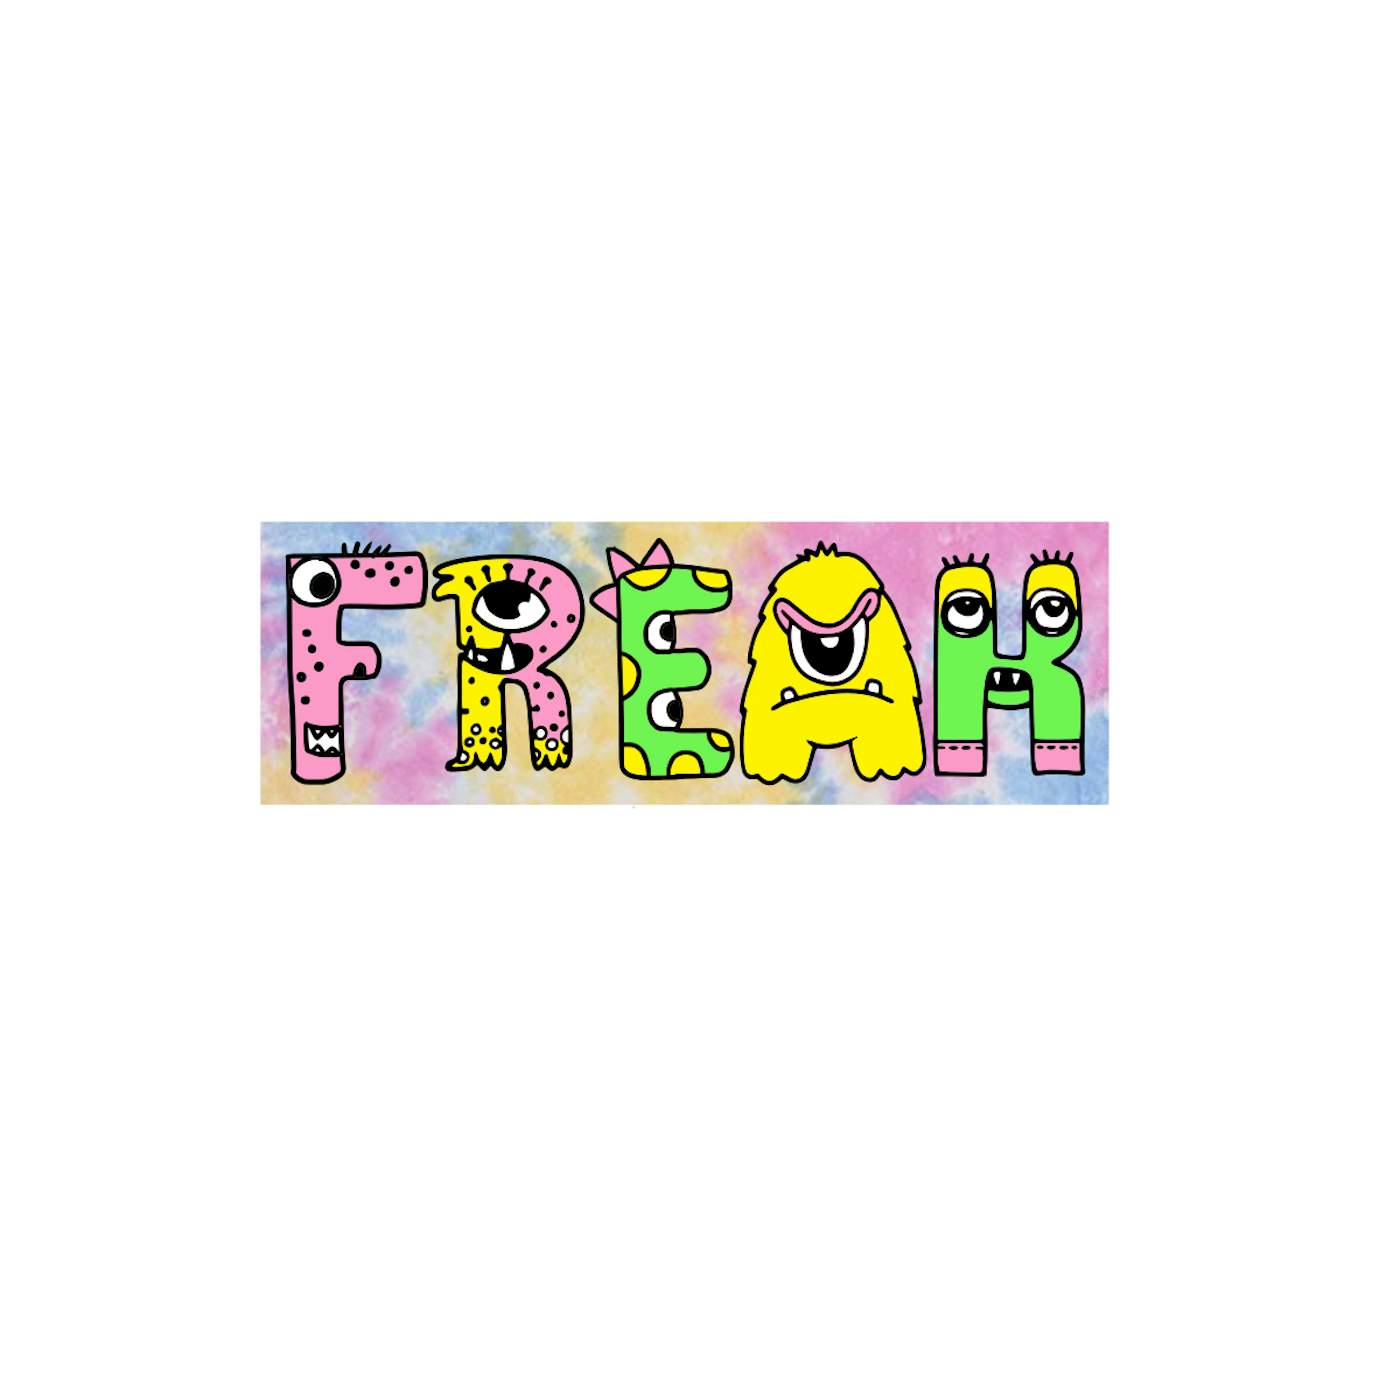 Sofi Tukker Freak Fam Rectangle Sticker